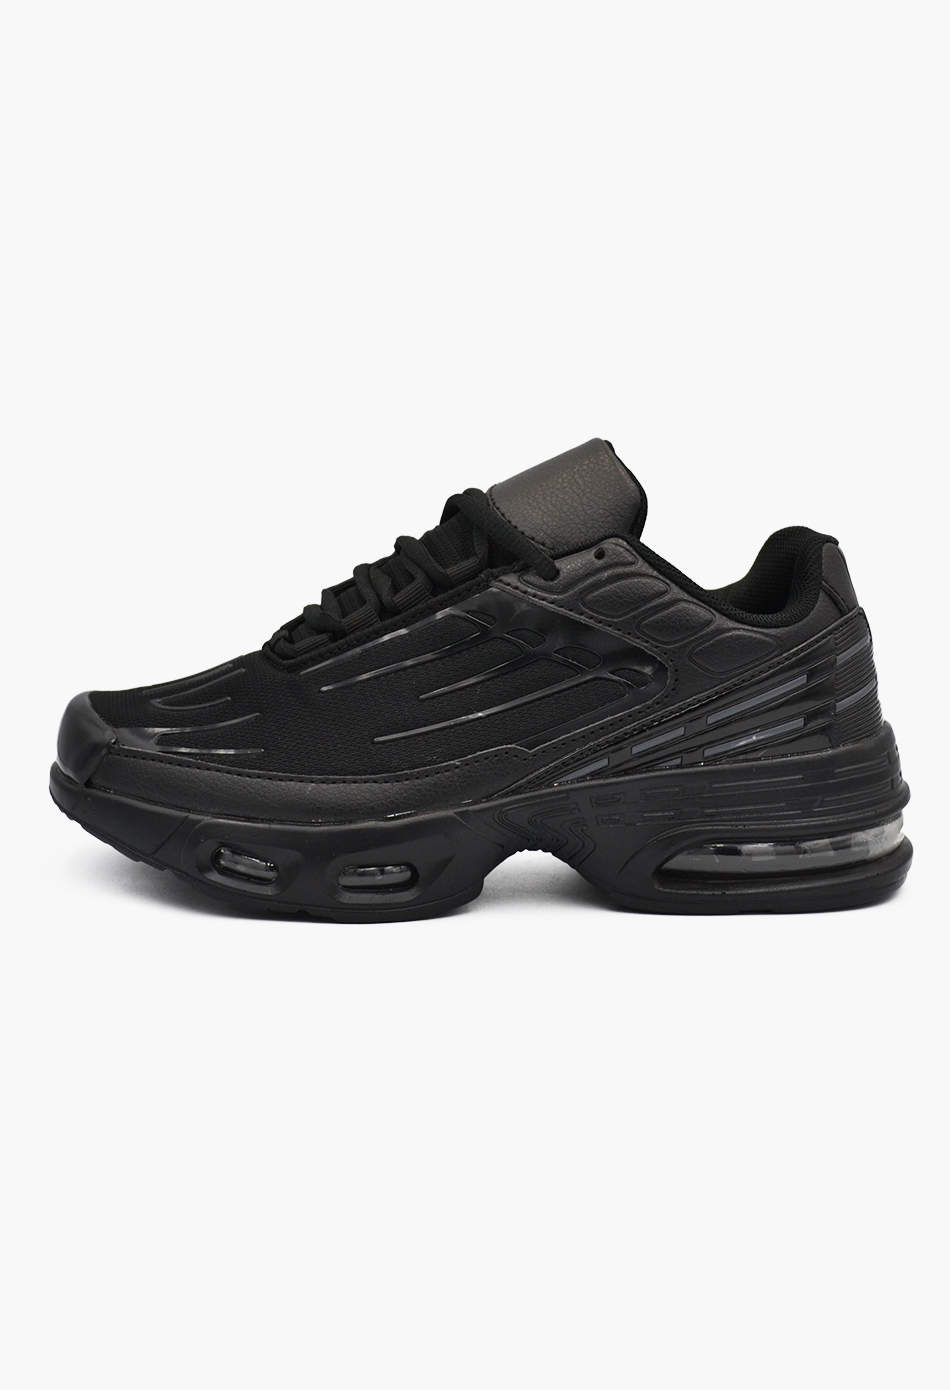 Αθλητικά Παπούτσια για Τρέξιμο Μαύρα / L-TN505-black Γυναικεία Αθλητικά και Sneakers joya.gr